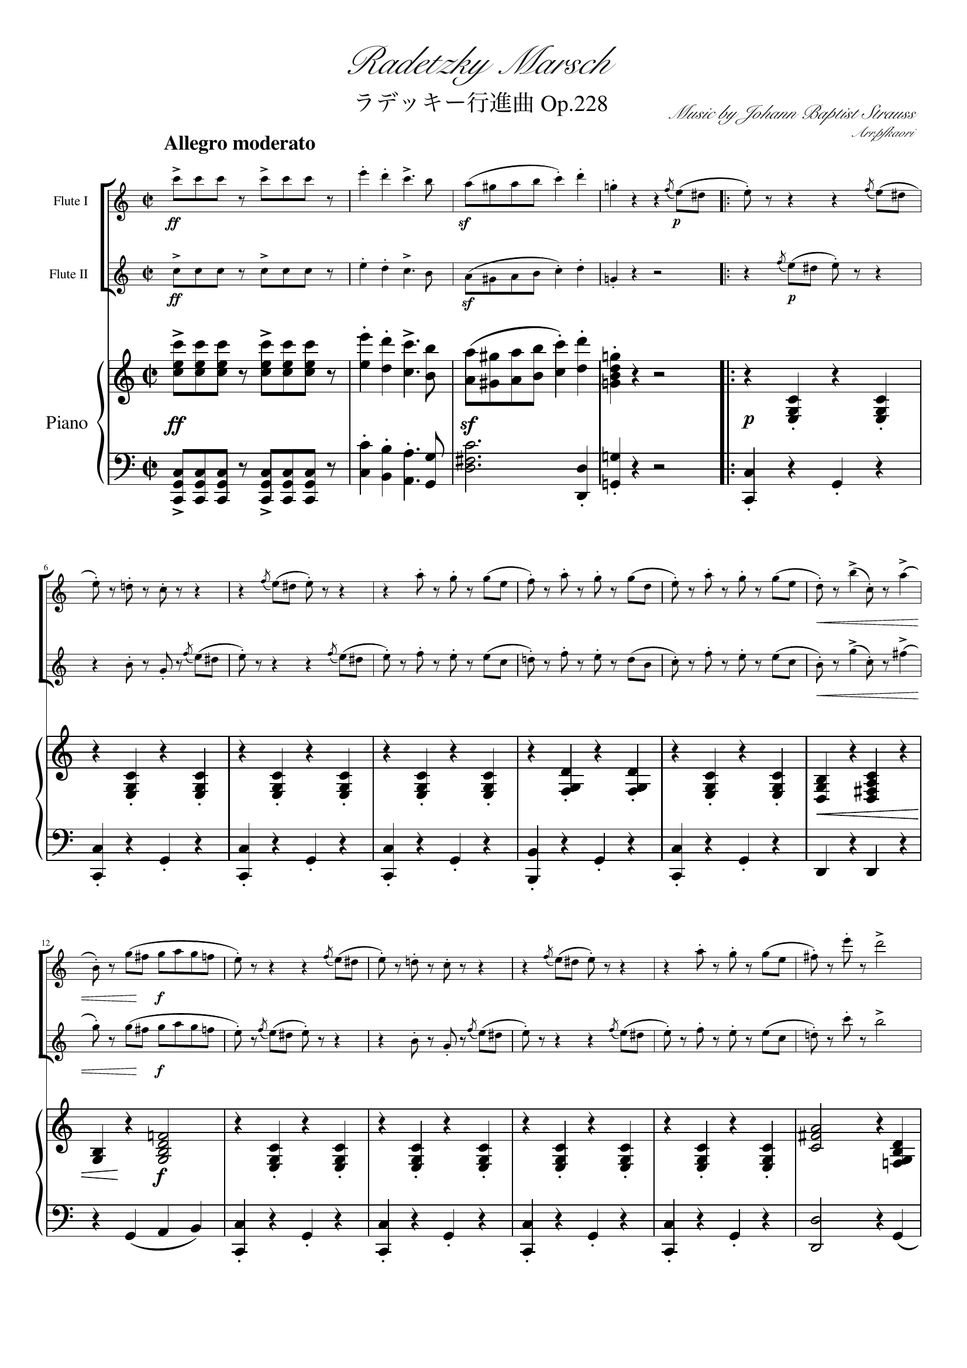 ヨハンシュトラウス1世 - ラデッキー行進曲 (C・ピアノトリオ/フルートデュオ) by pfkaori